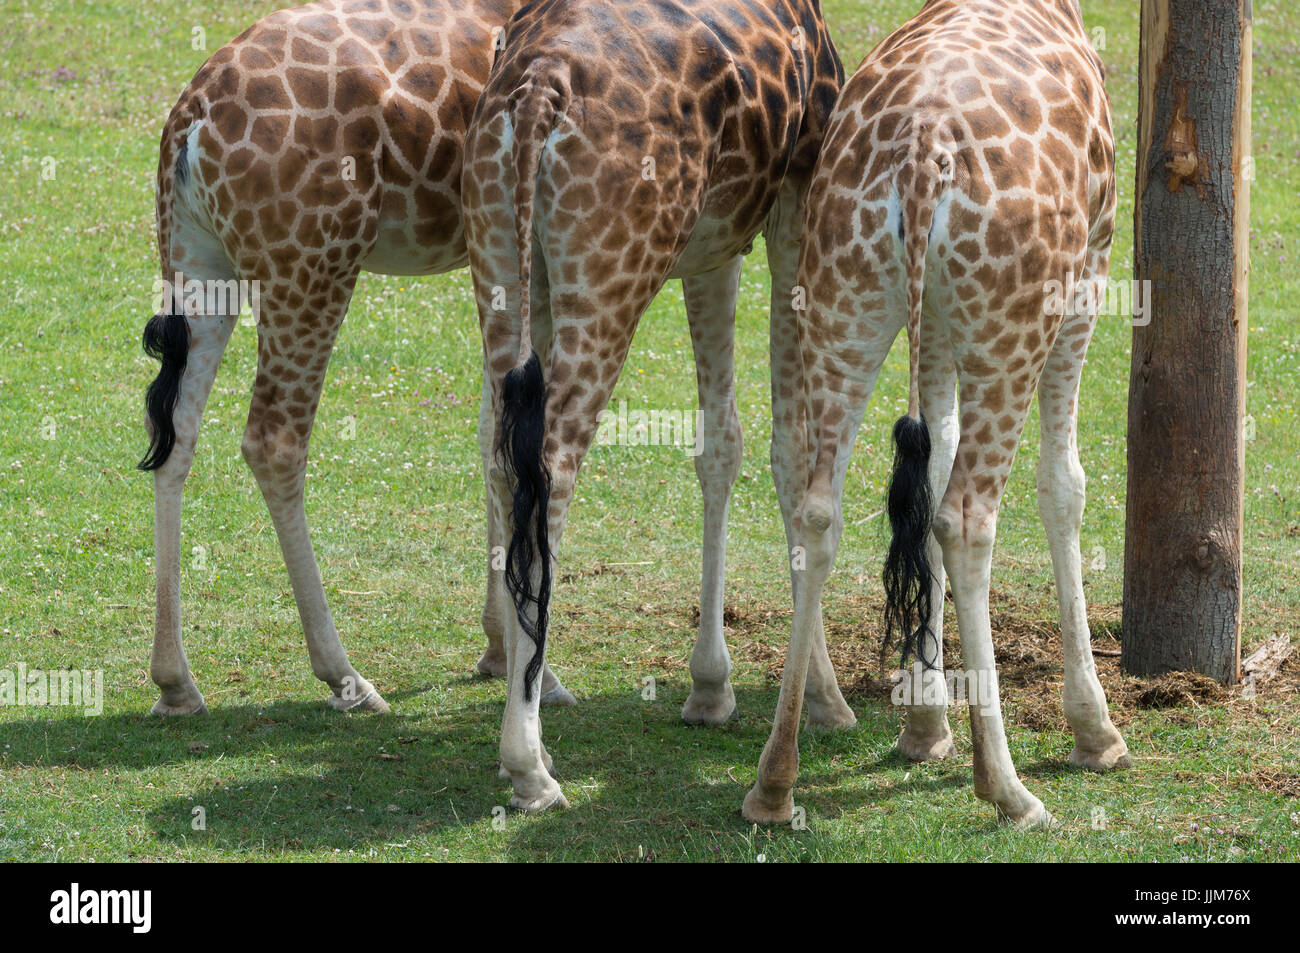 Girafe en captivité Banque D'Images